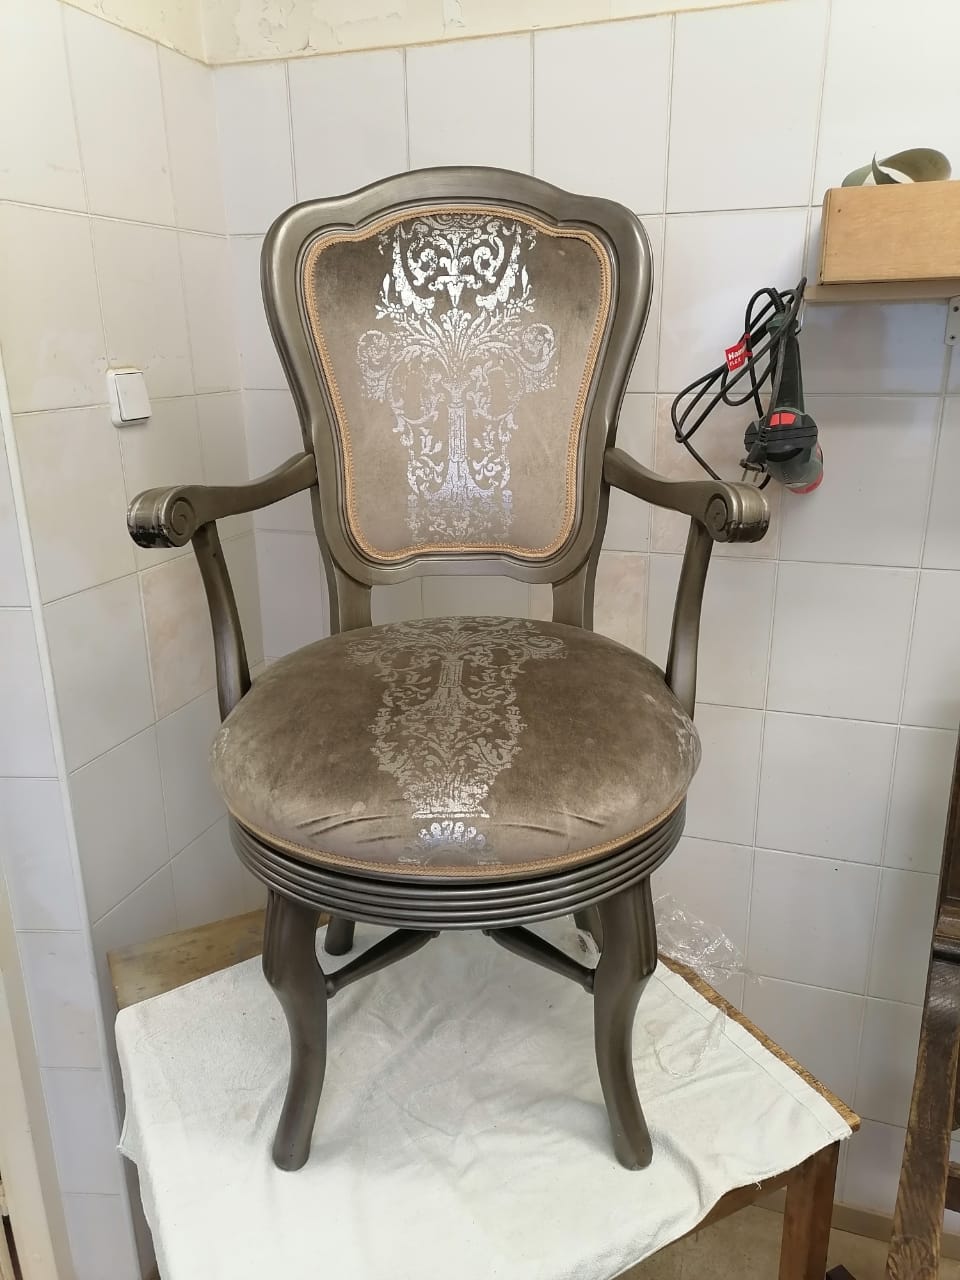 Реставрация вращающегося кресла из гарнитура элитной мебели в реставрационной мастерской Restorer.expert